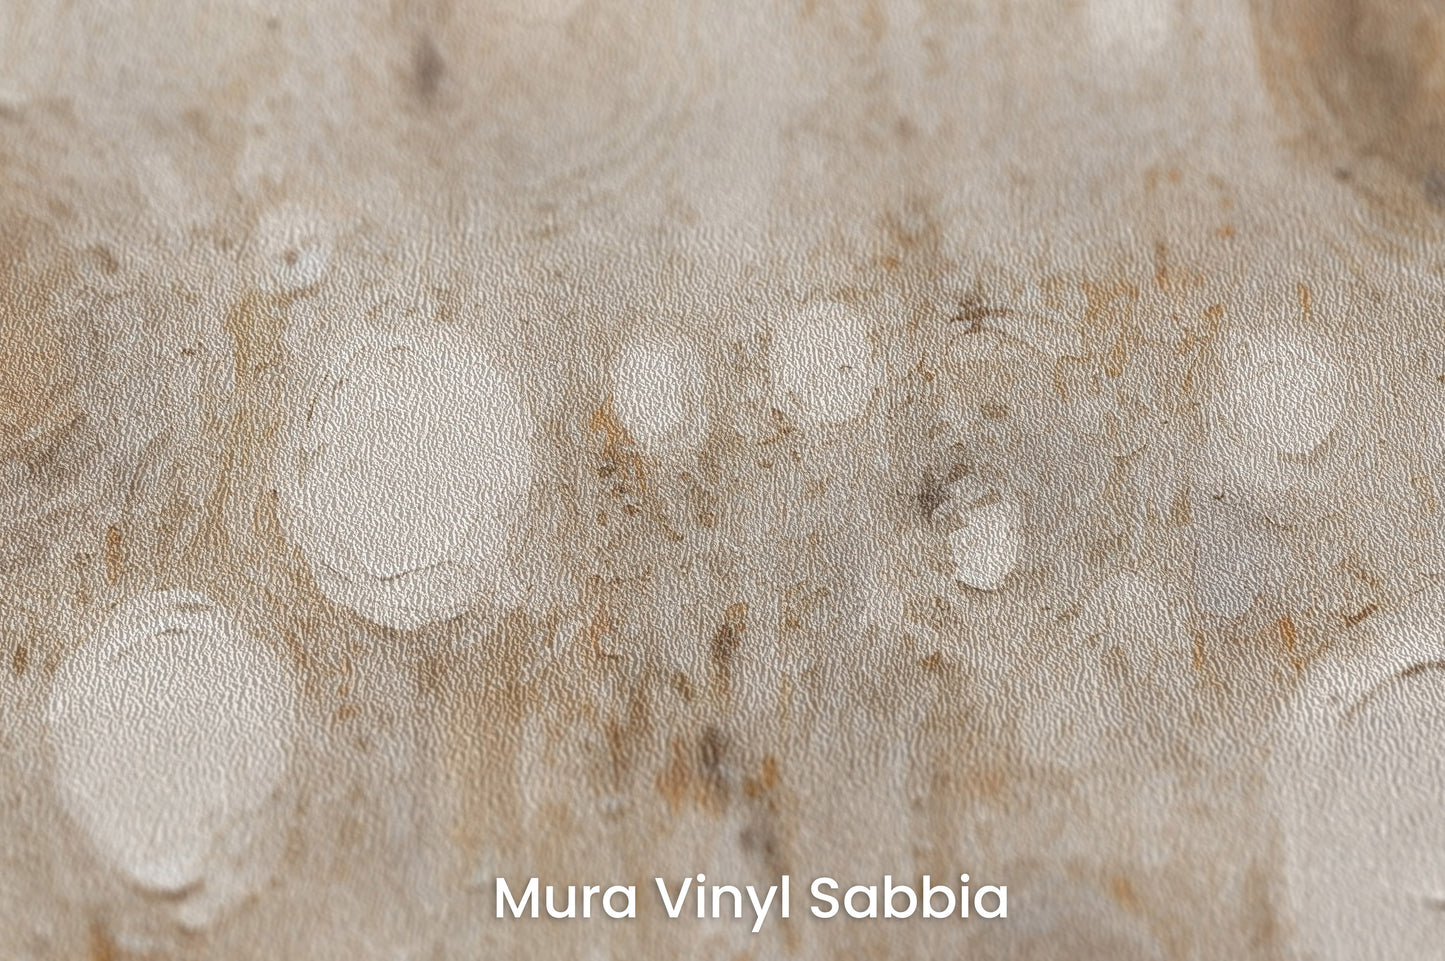 Zbliżenie na artystyczną fototapetę o nazwie ANCIENT SOLAR WHISPERS na podłożu Mura Vinyl Sabbia struktura grubego ziarna piasku.